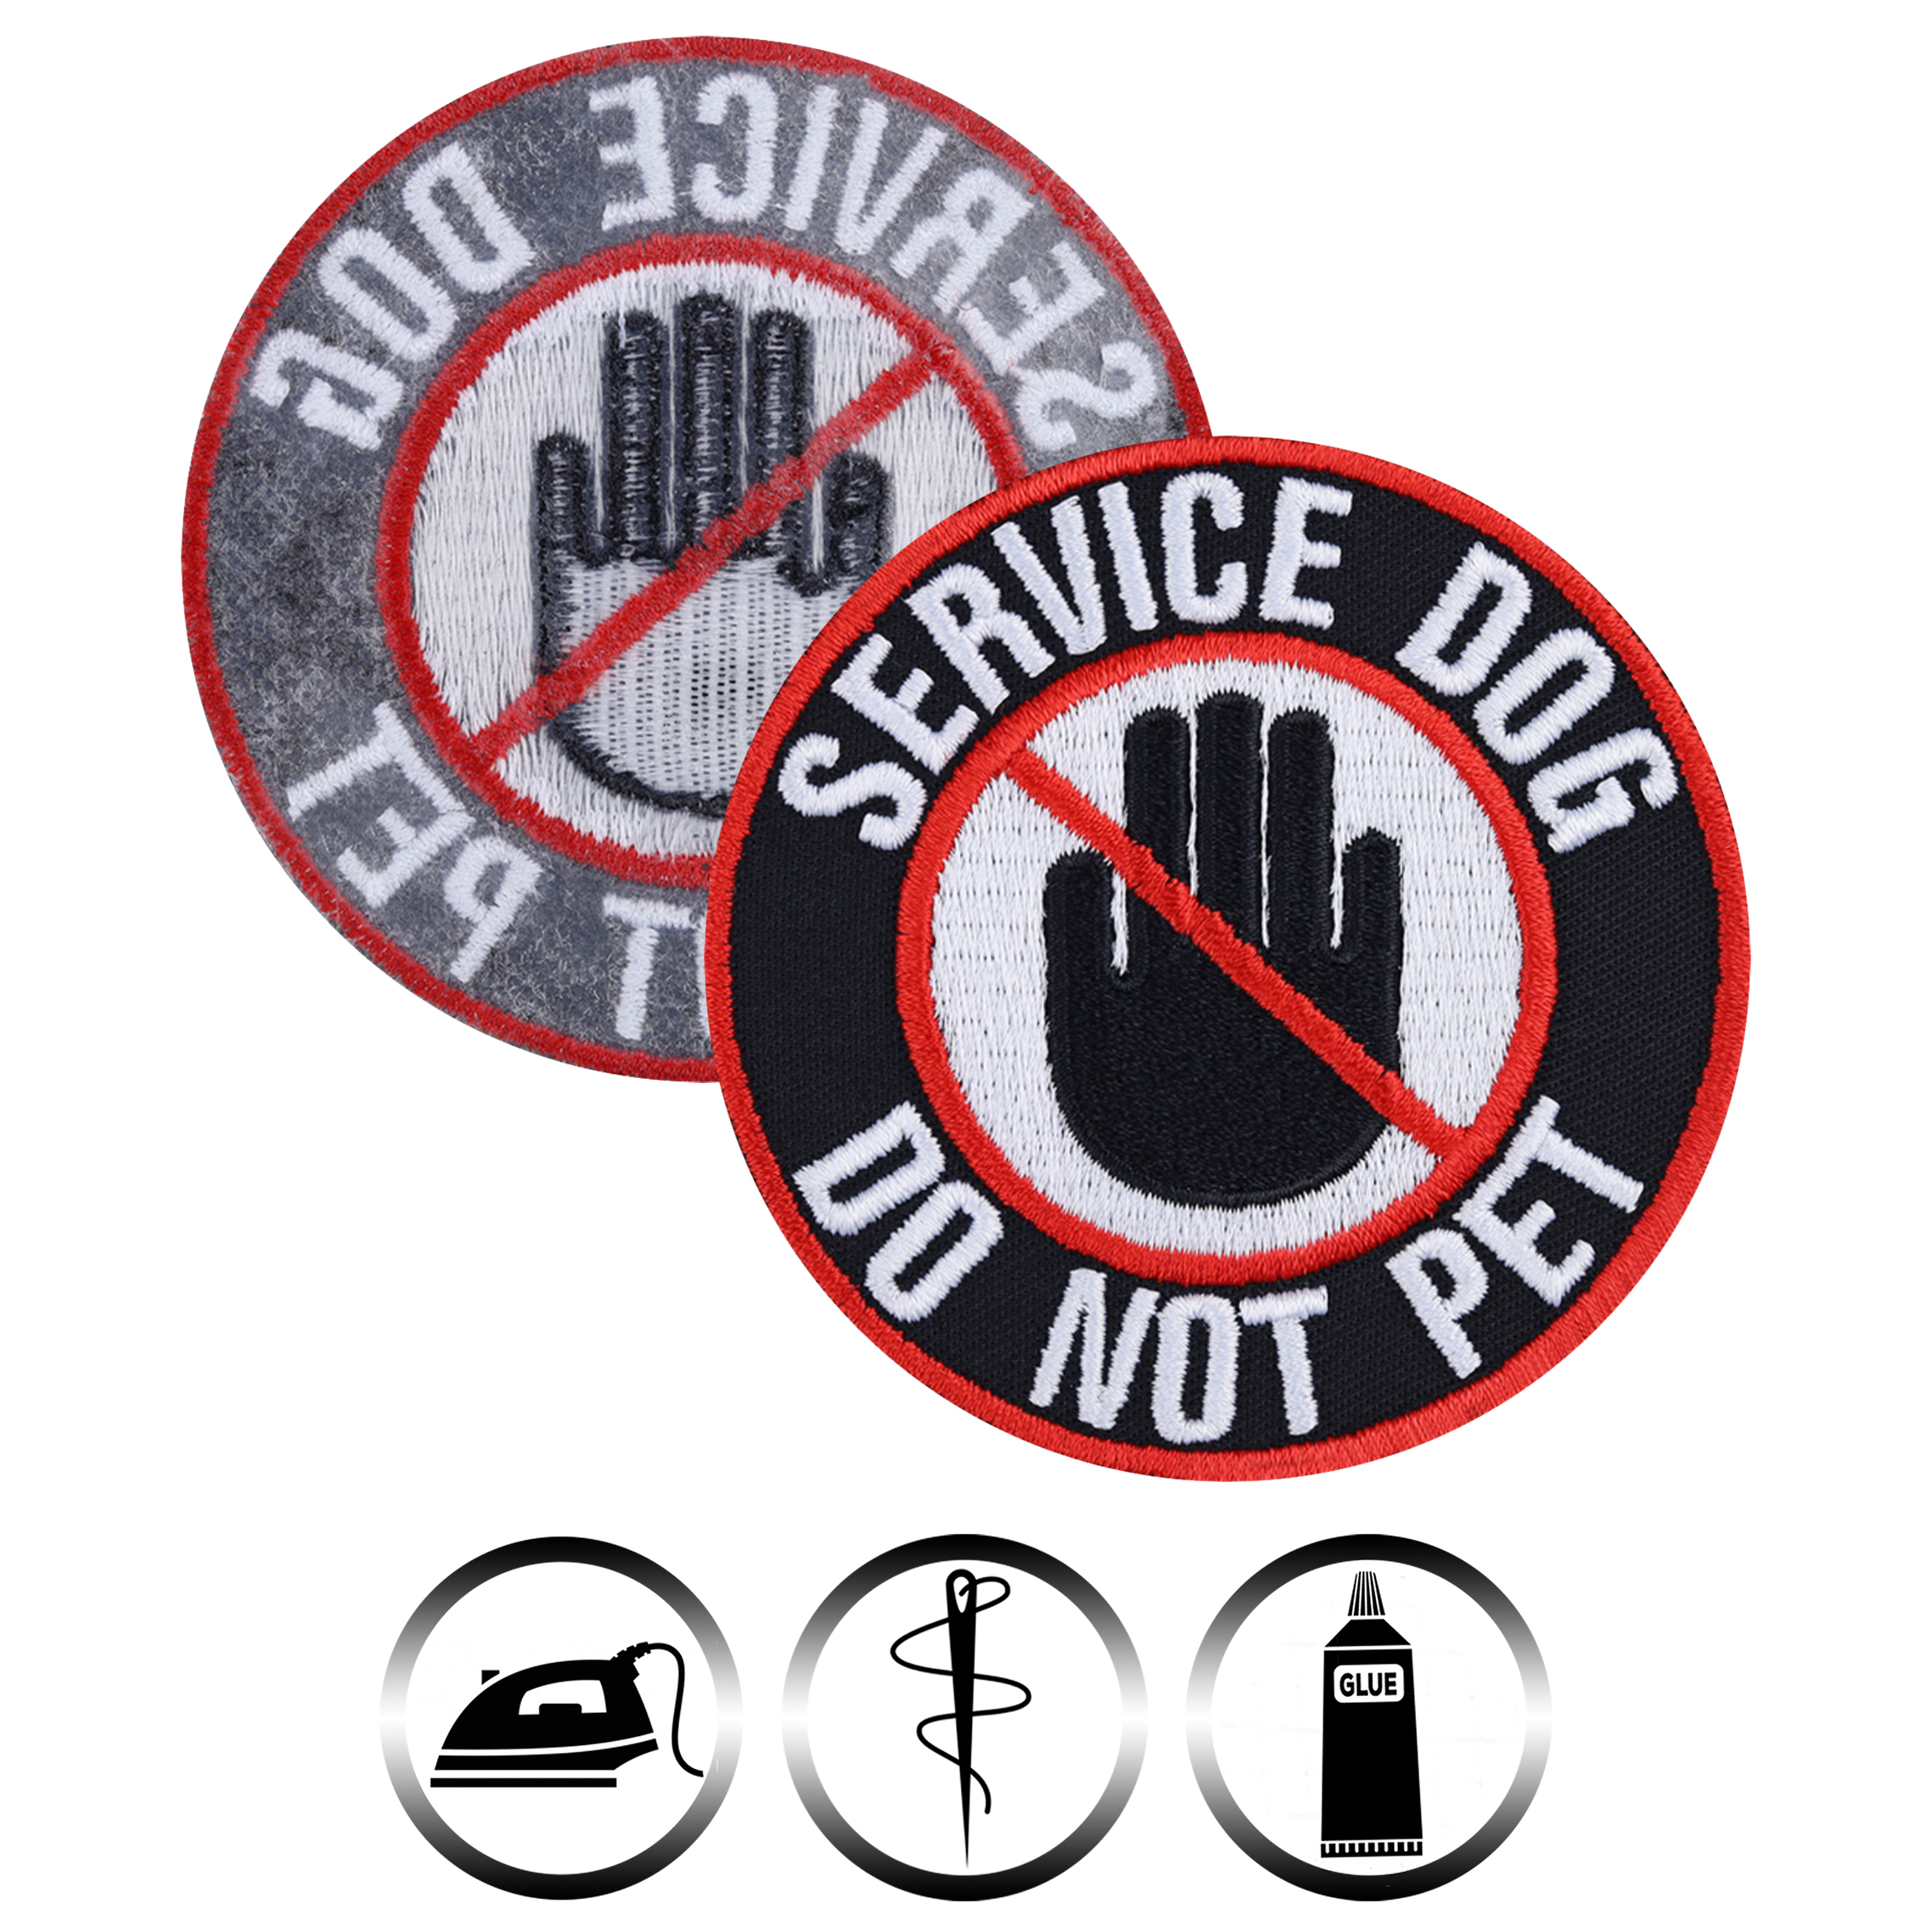 Service dog - Do not pet - Patch